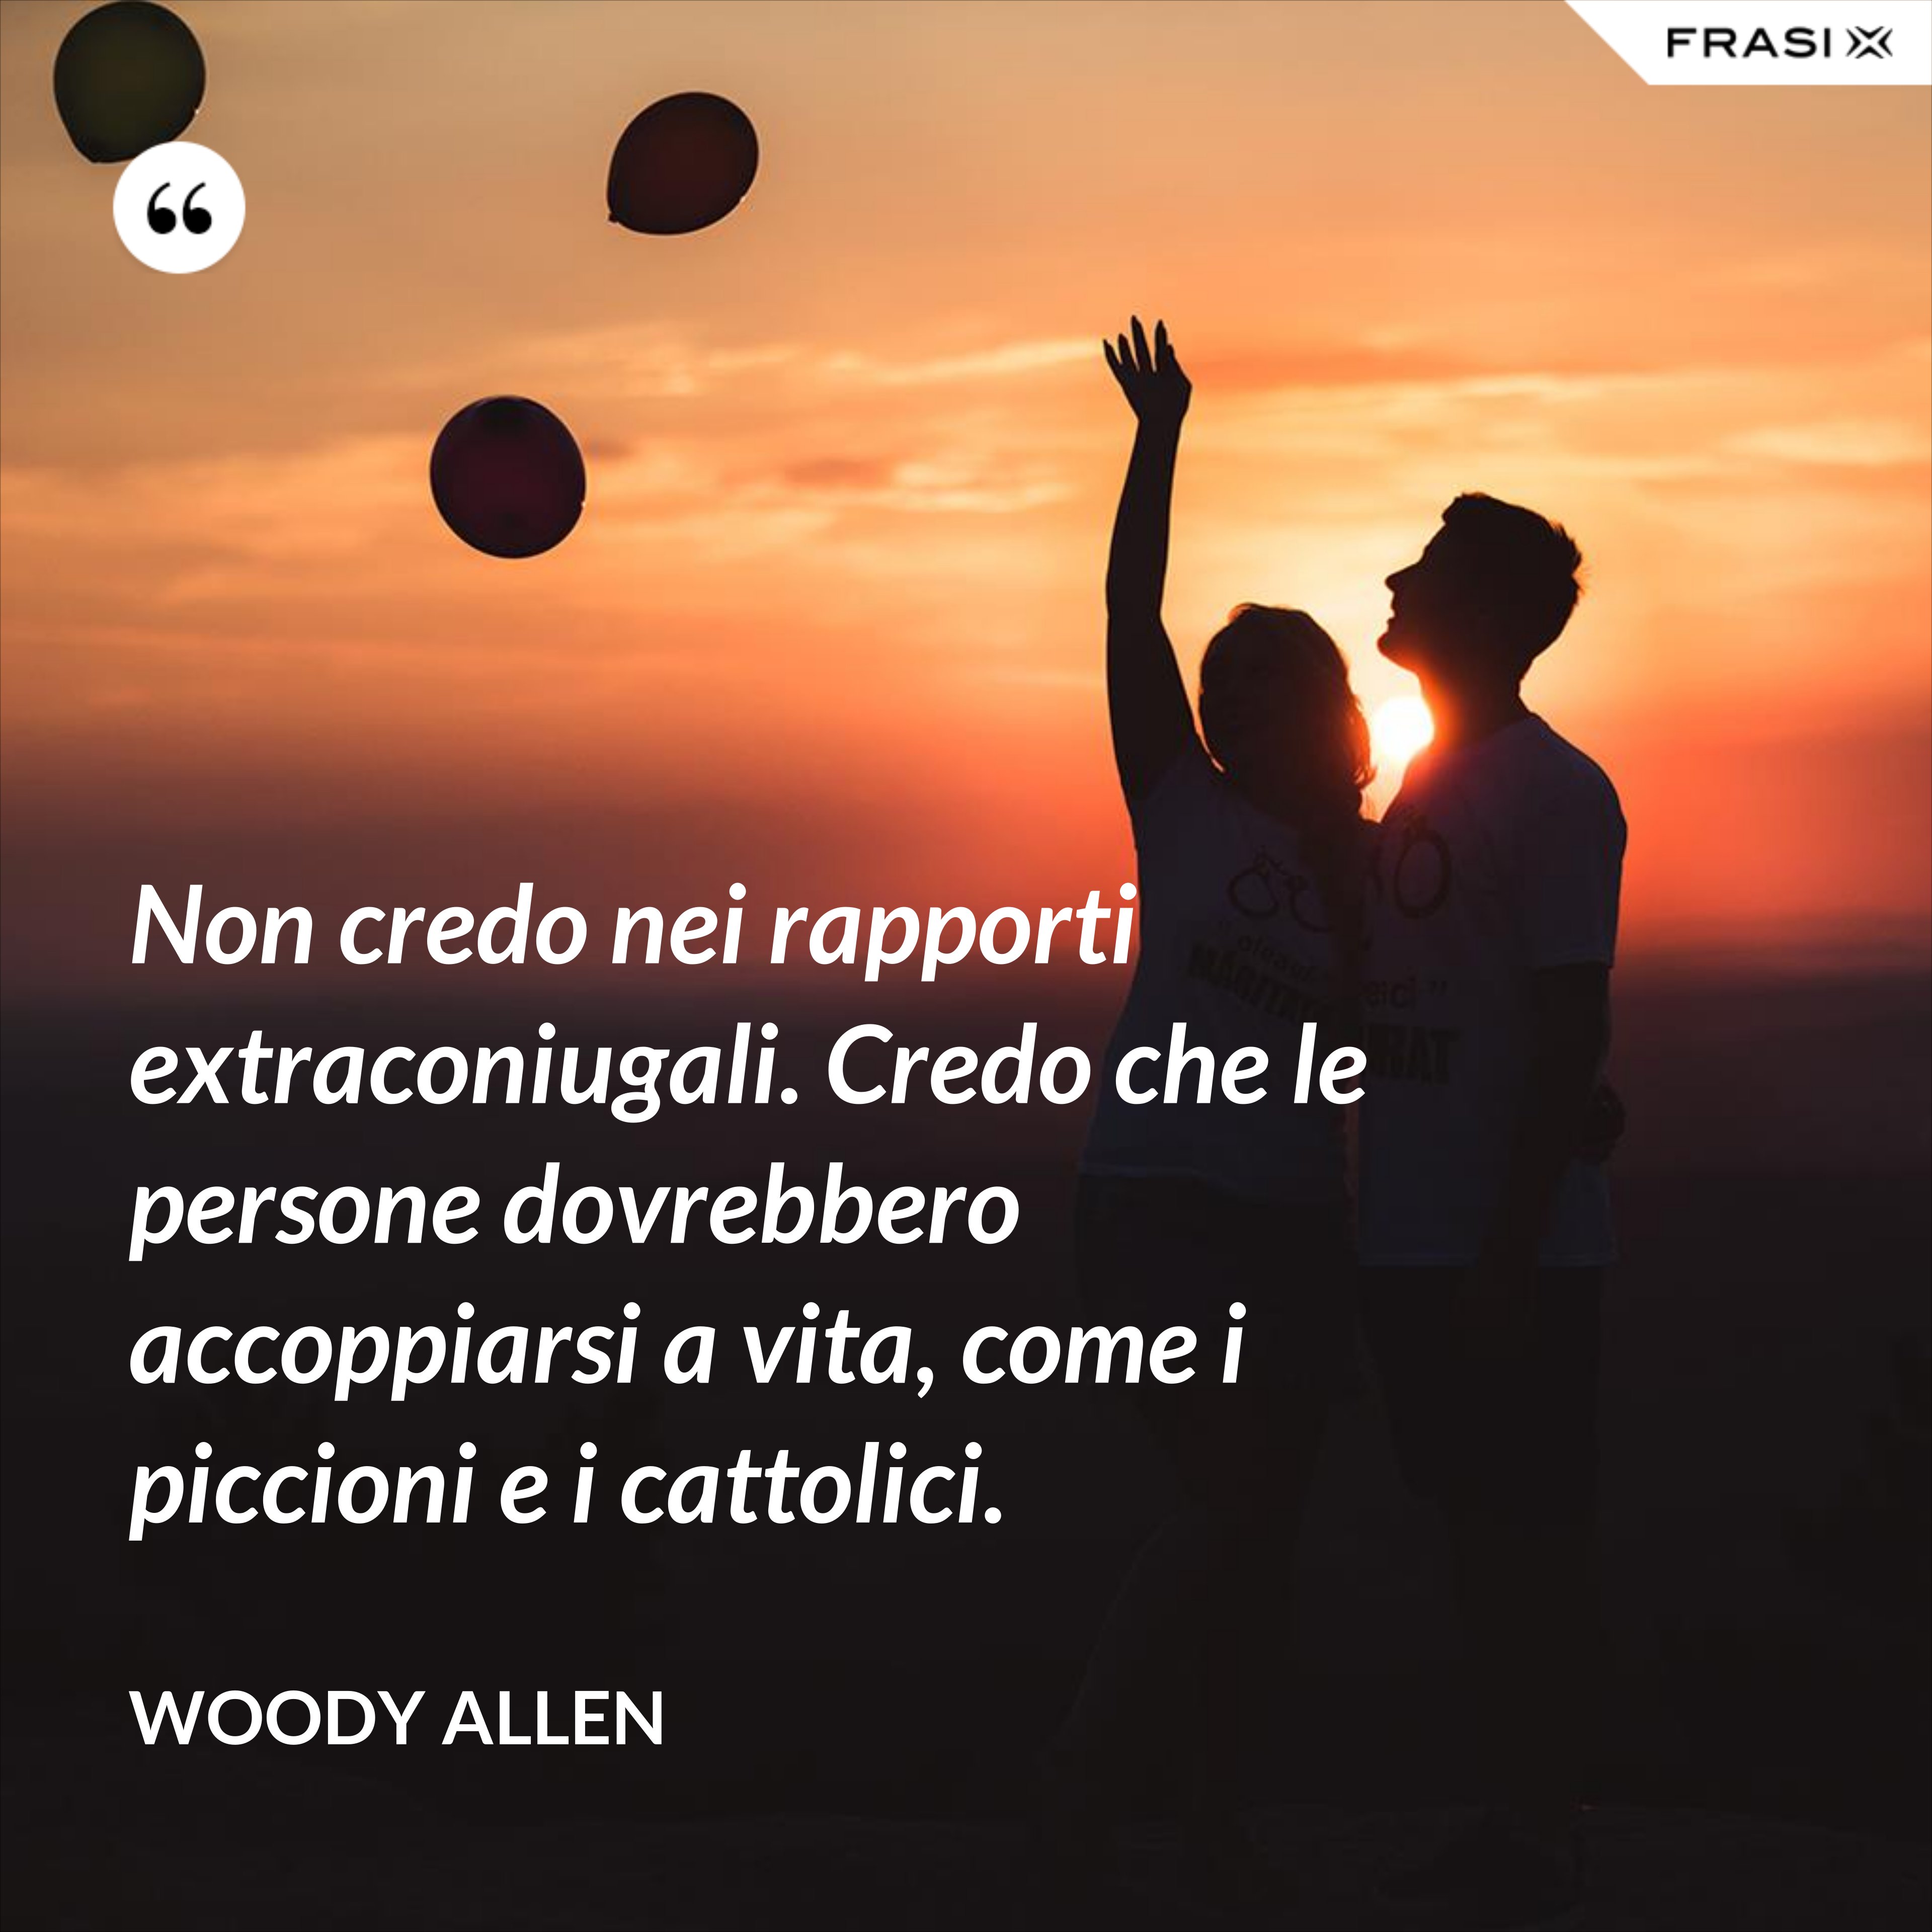 Non credo nei rapporti extraconiugali. Credo che le persone dovrebbero accoppiarsi a vita, come i piccioni e i cattolici. - Woody Allen